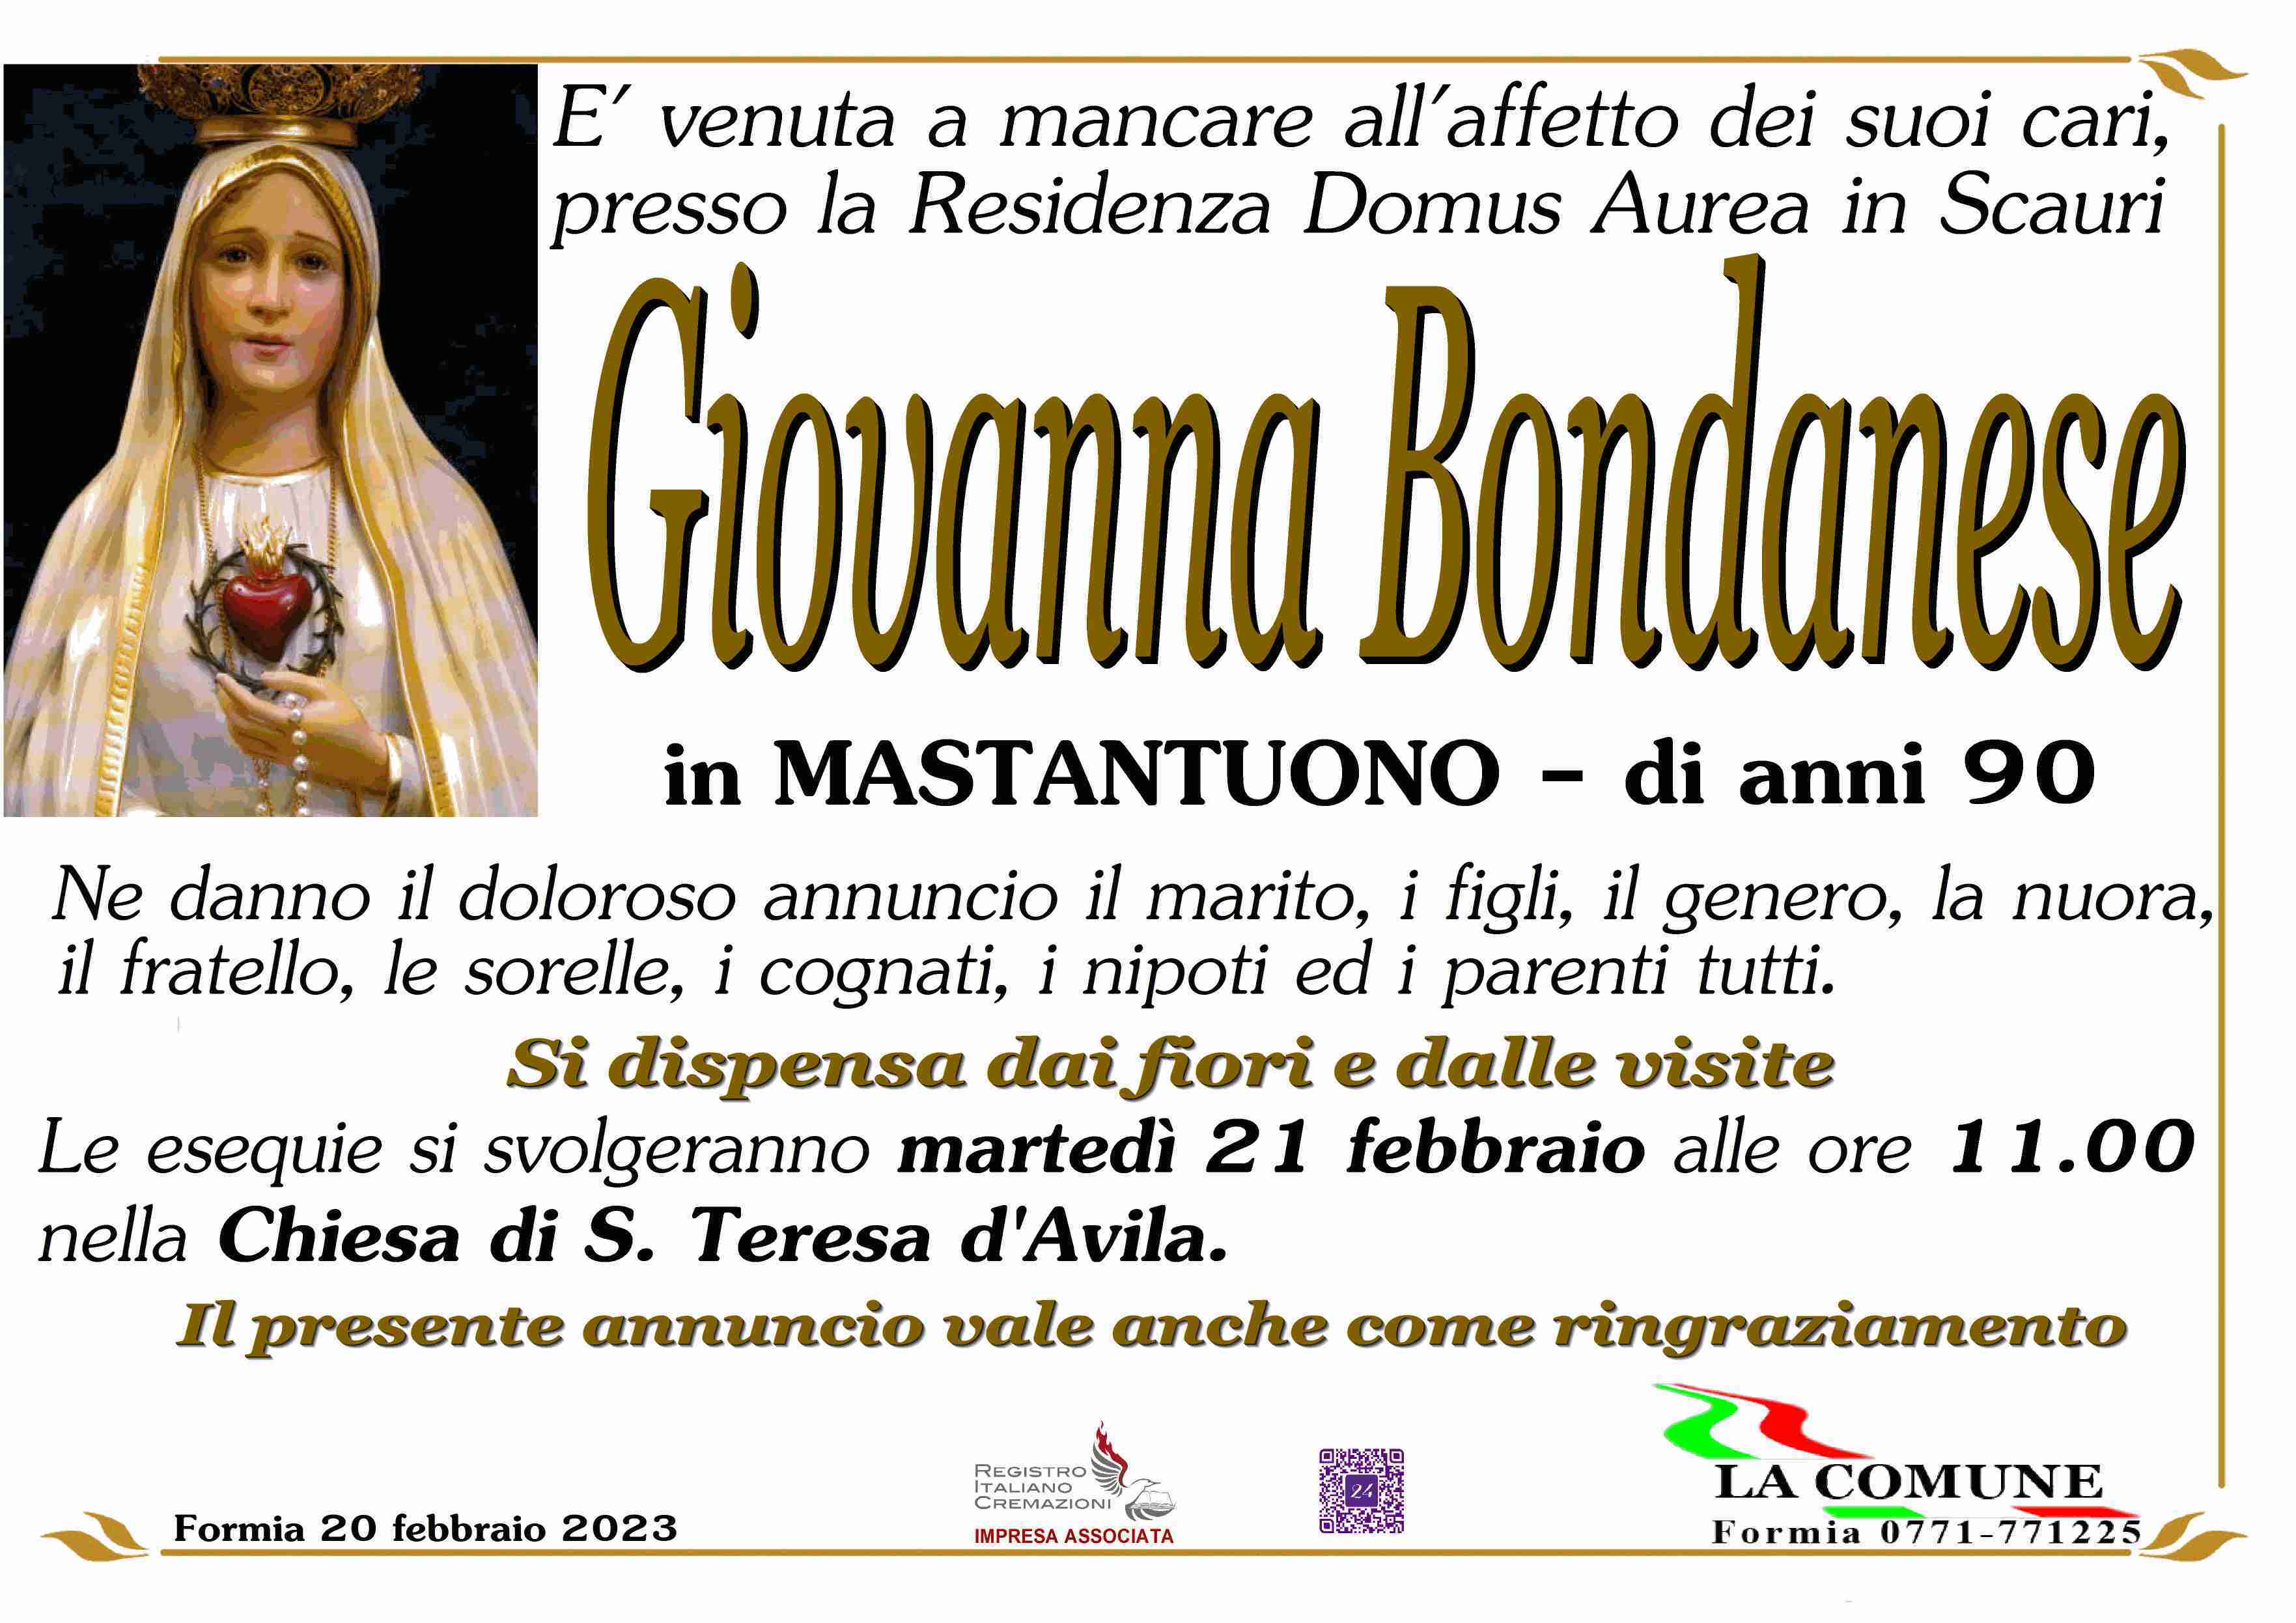 Giovanna Bondanese